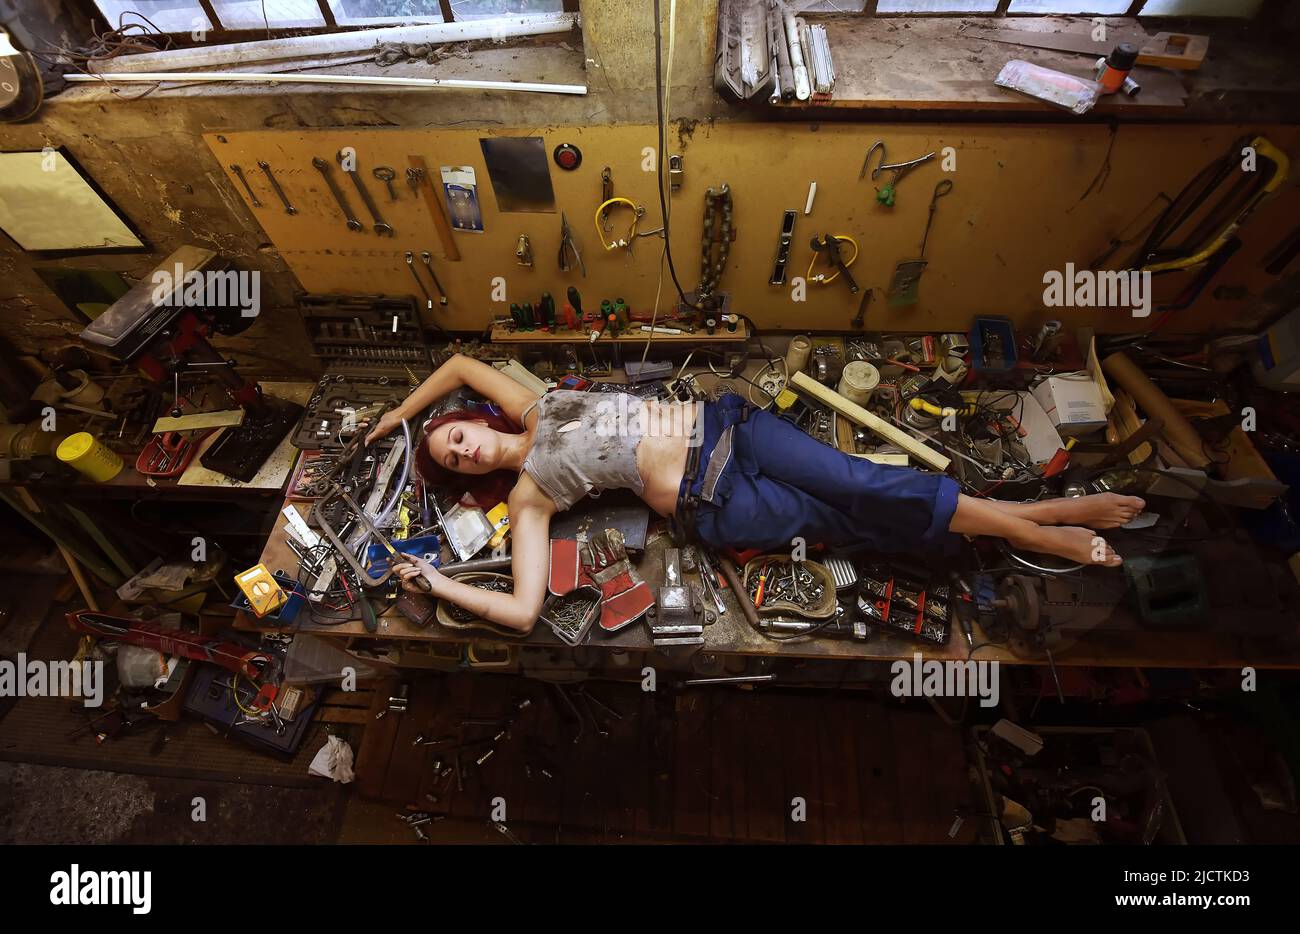 Eine junge, schöne Frau findet während ihrer Arbeitszeit Zeit zum Schlafen. Sie legt sich auf den Arbeitstisch, der mit Werkzeugen und anderen elektronischen Geräten gefüllt ist. Stockfoto